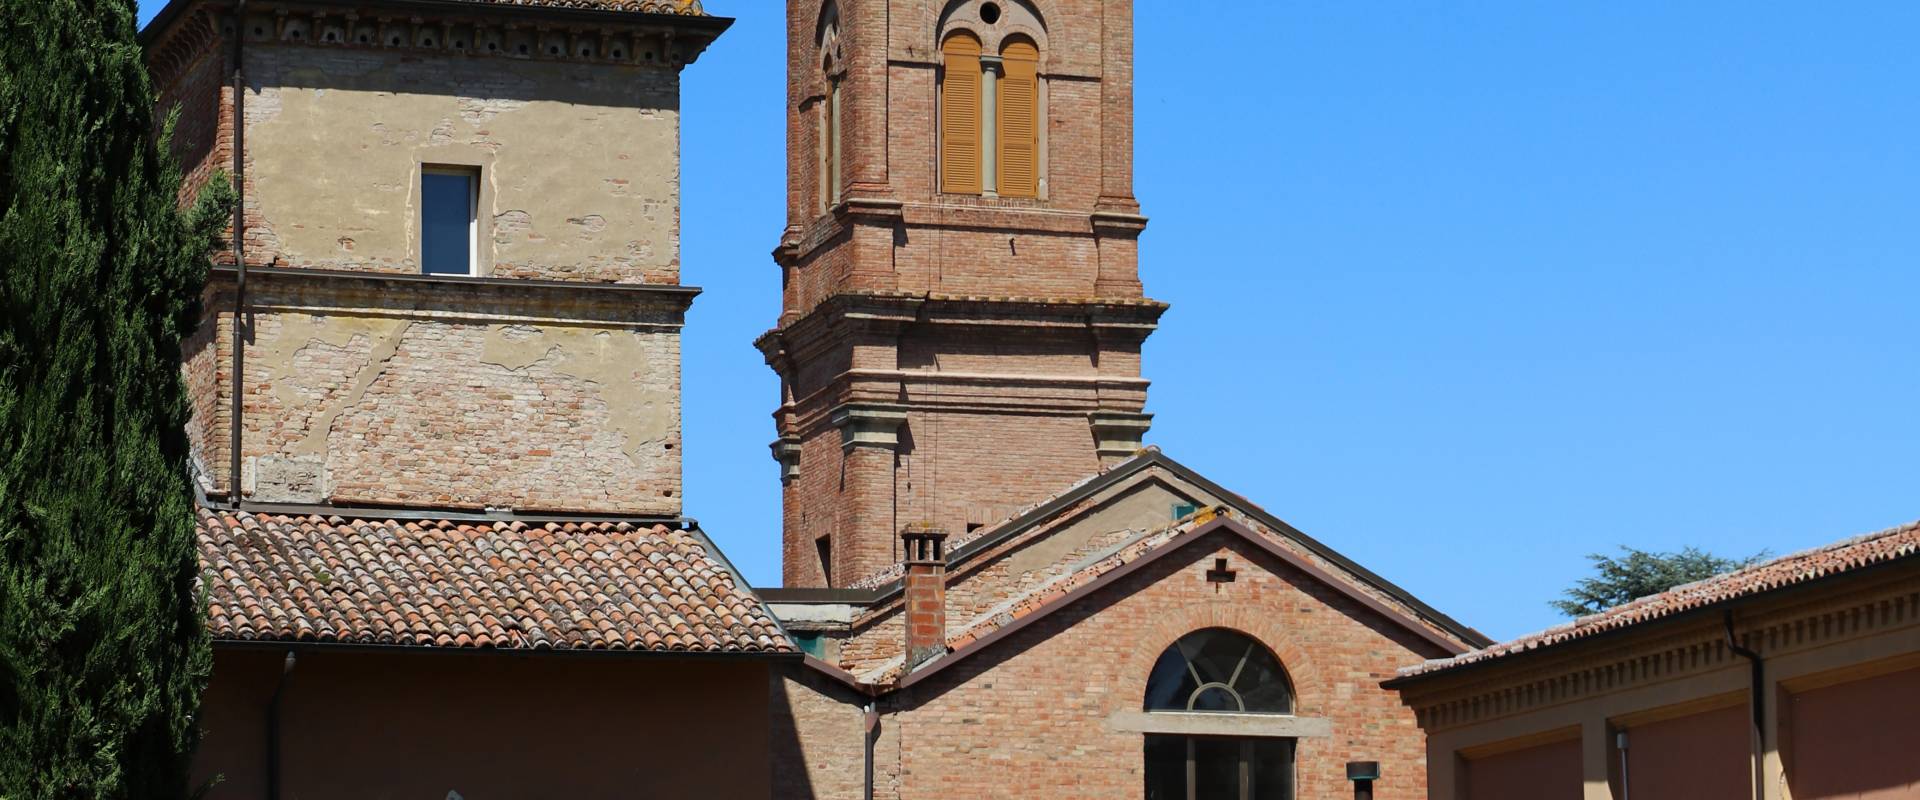 Imola, Santuario della Beata Vergine del Piratello, campanile del 1500-10 ca. su progetto del bramante 02 photo by Sailko